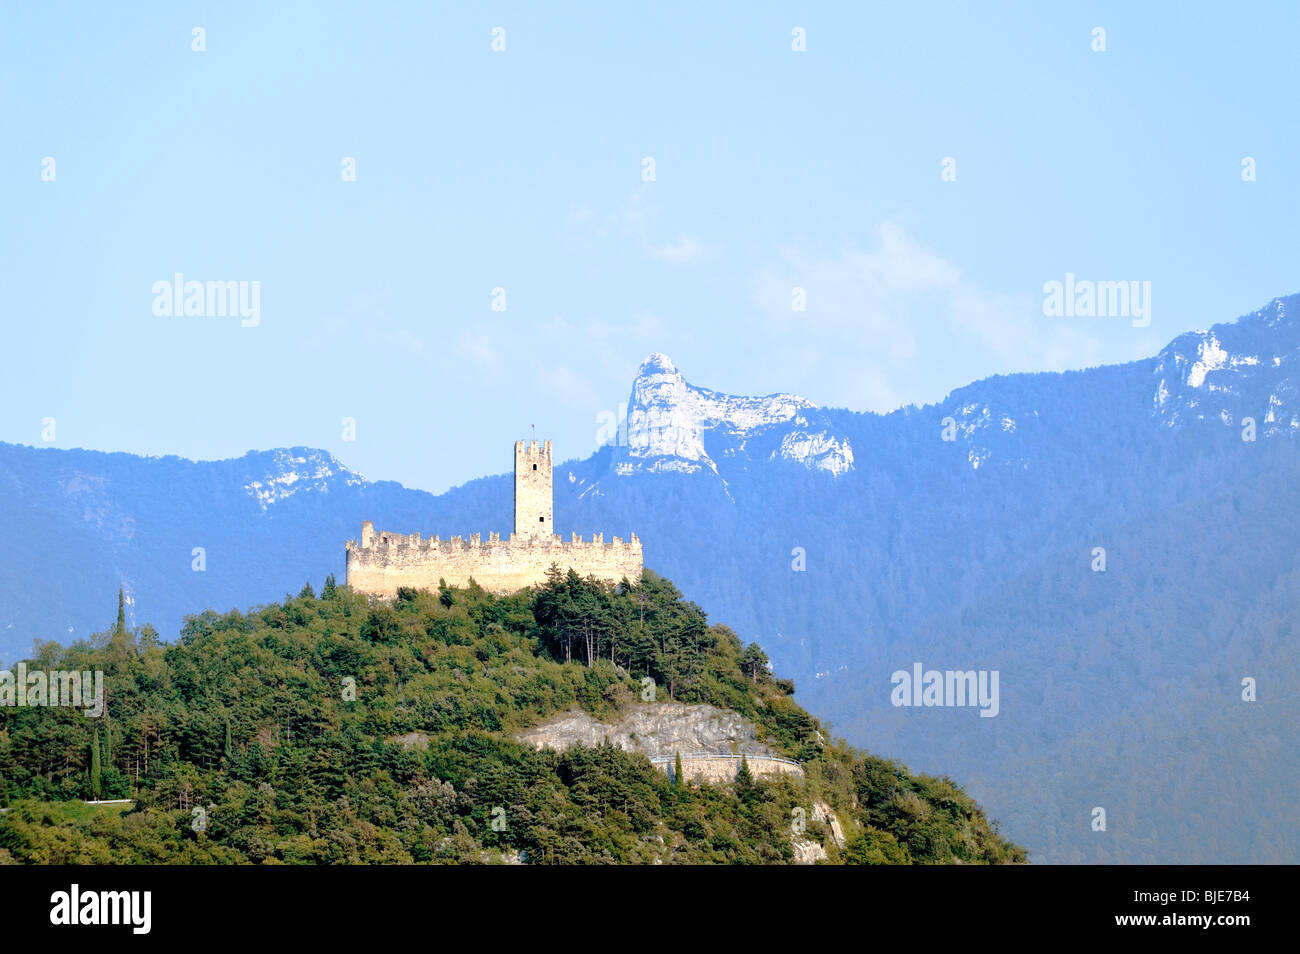 The Castello di Drena hilltop castle on limestone cliffs north of Lake Garda between Arco and Trento. Alto Adige region, Italy Stock Photo